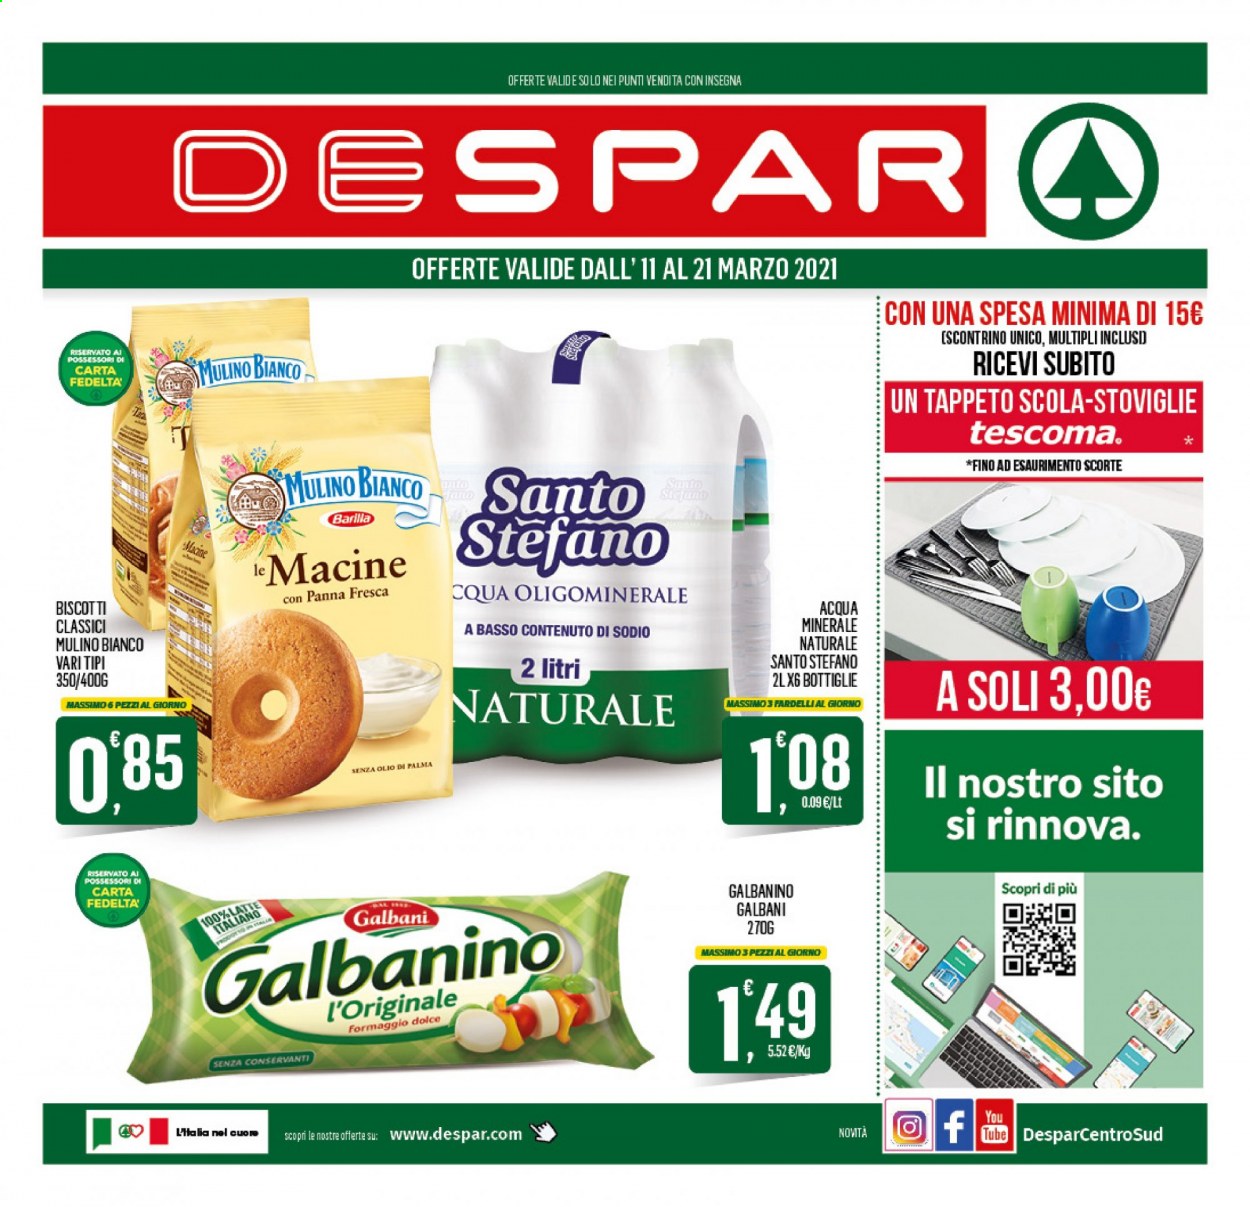 thumbnail - Volantino Despar - 11/3/2021 - 21/3/2021 - Prodotti in offerta - Mulino Bianco, Galbani, formaggio, Galbanino, latte, Barilla, acqua minerale, Tescoma, tappeto. Pagina 1.